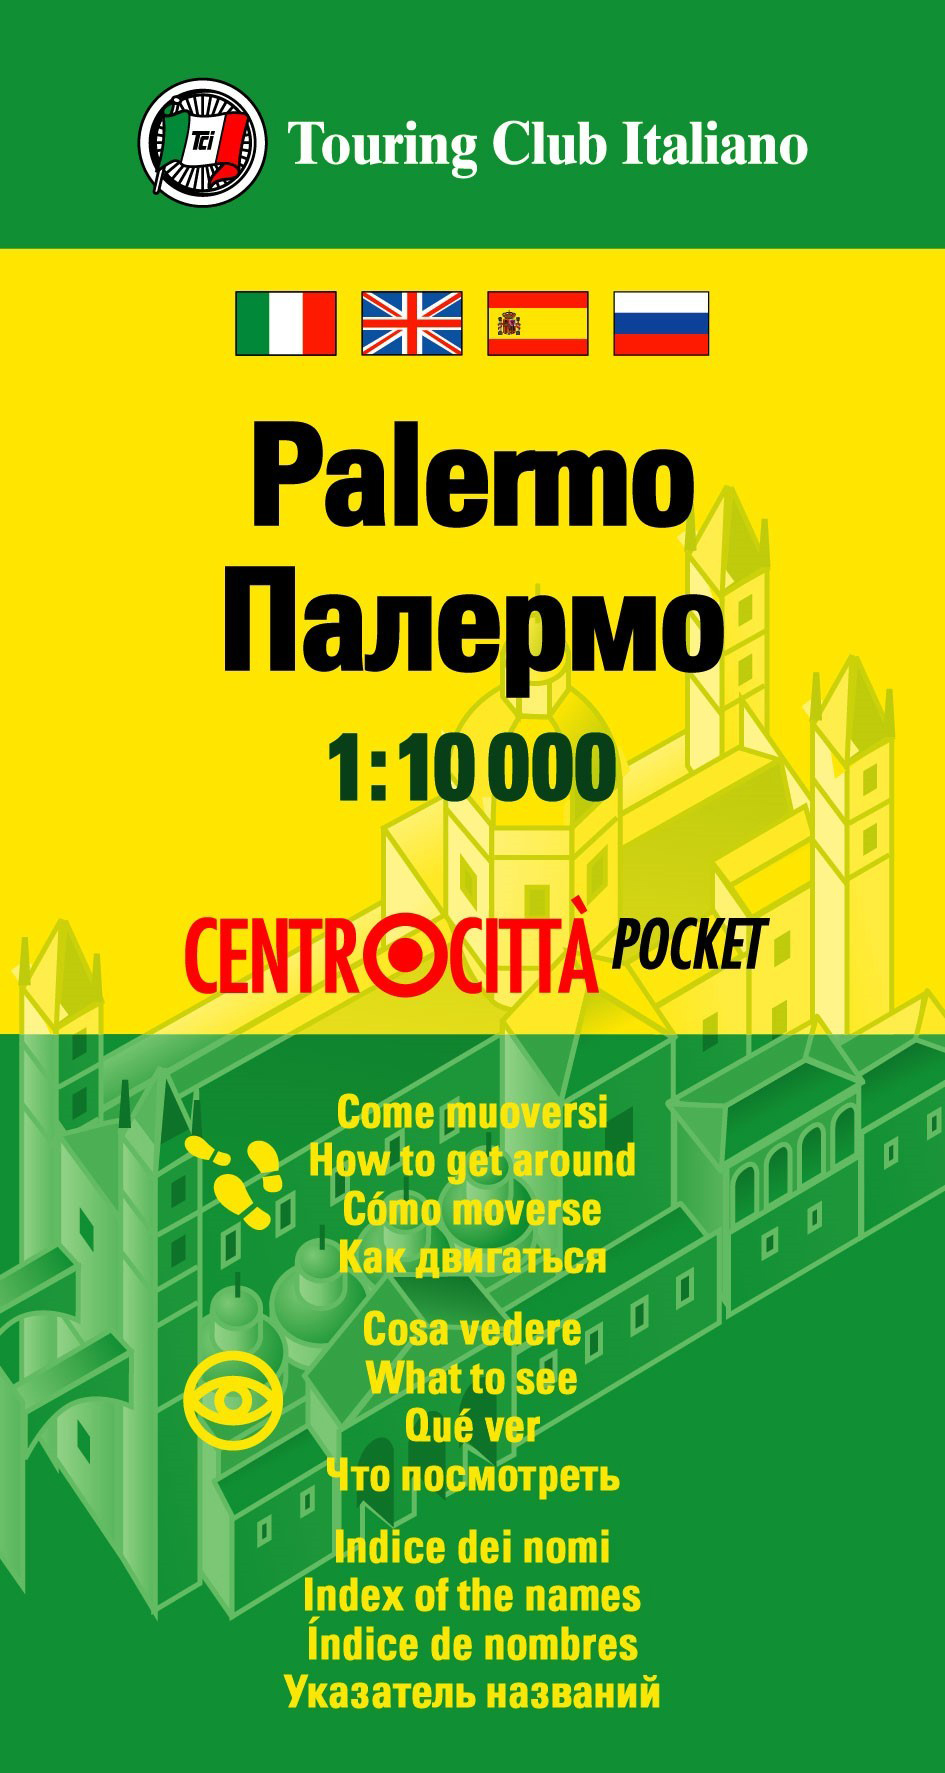 Online bestellen: Stadsplattegrond Centrocittà Pocket Palermo | Touring Club Italiano